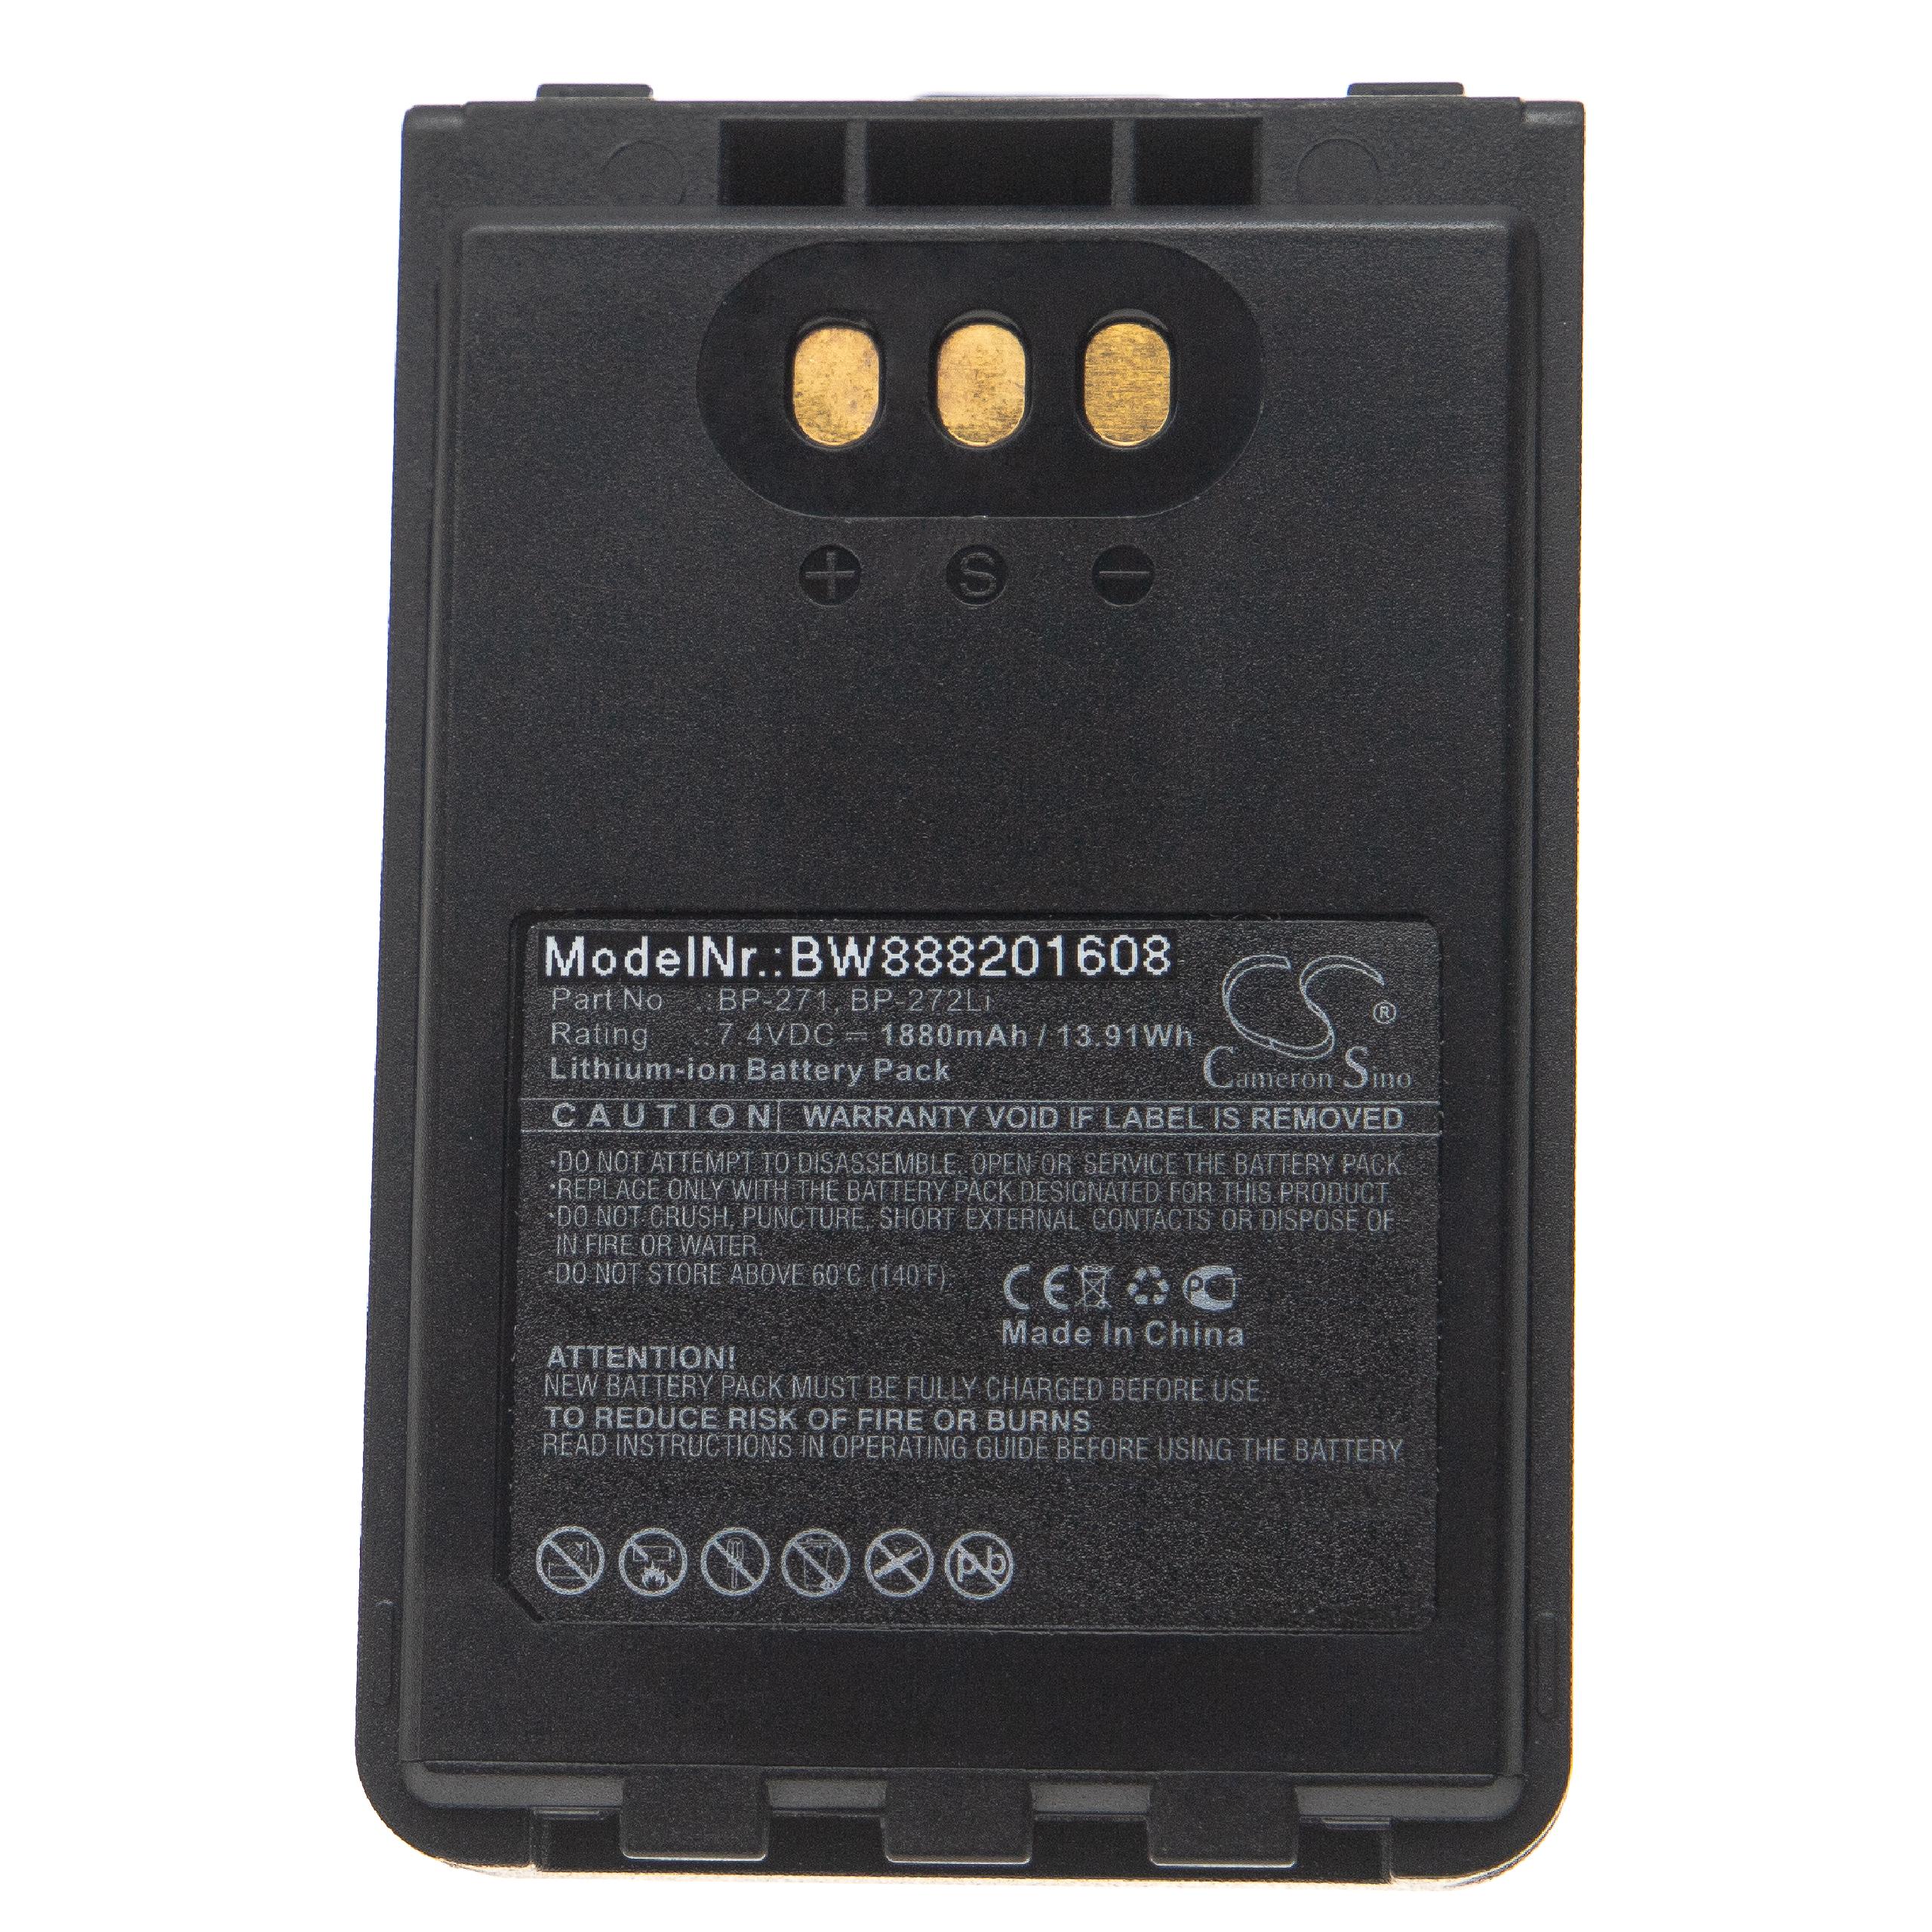 Akumulator do radiotelefonu zamiennik Icom BP-271, BP-272Li - 1880 mAh 7,4 V Li-Ion